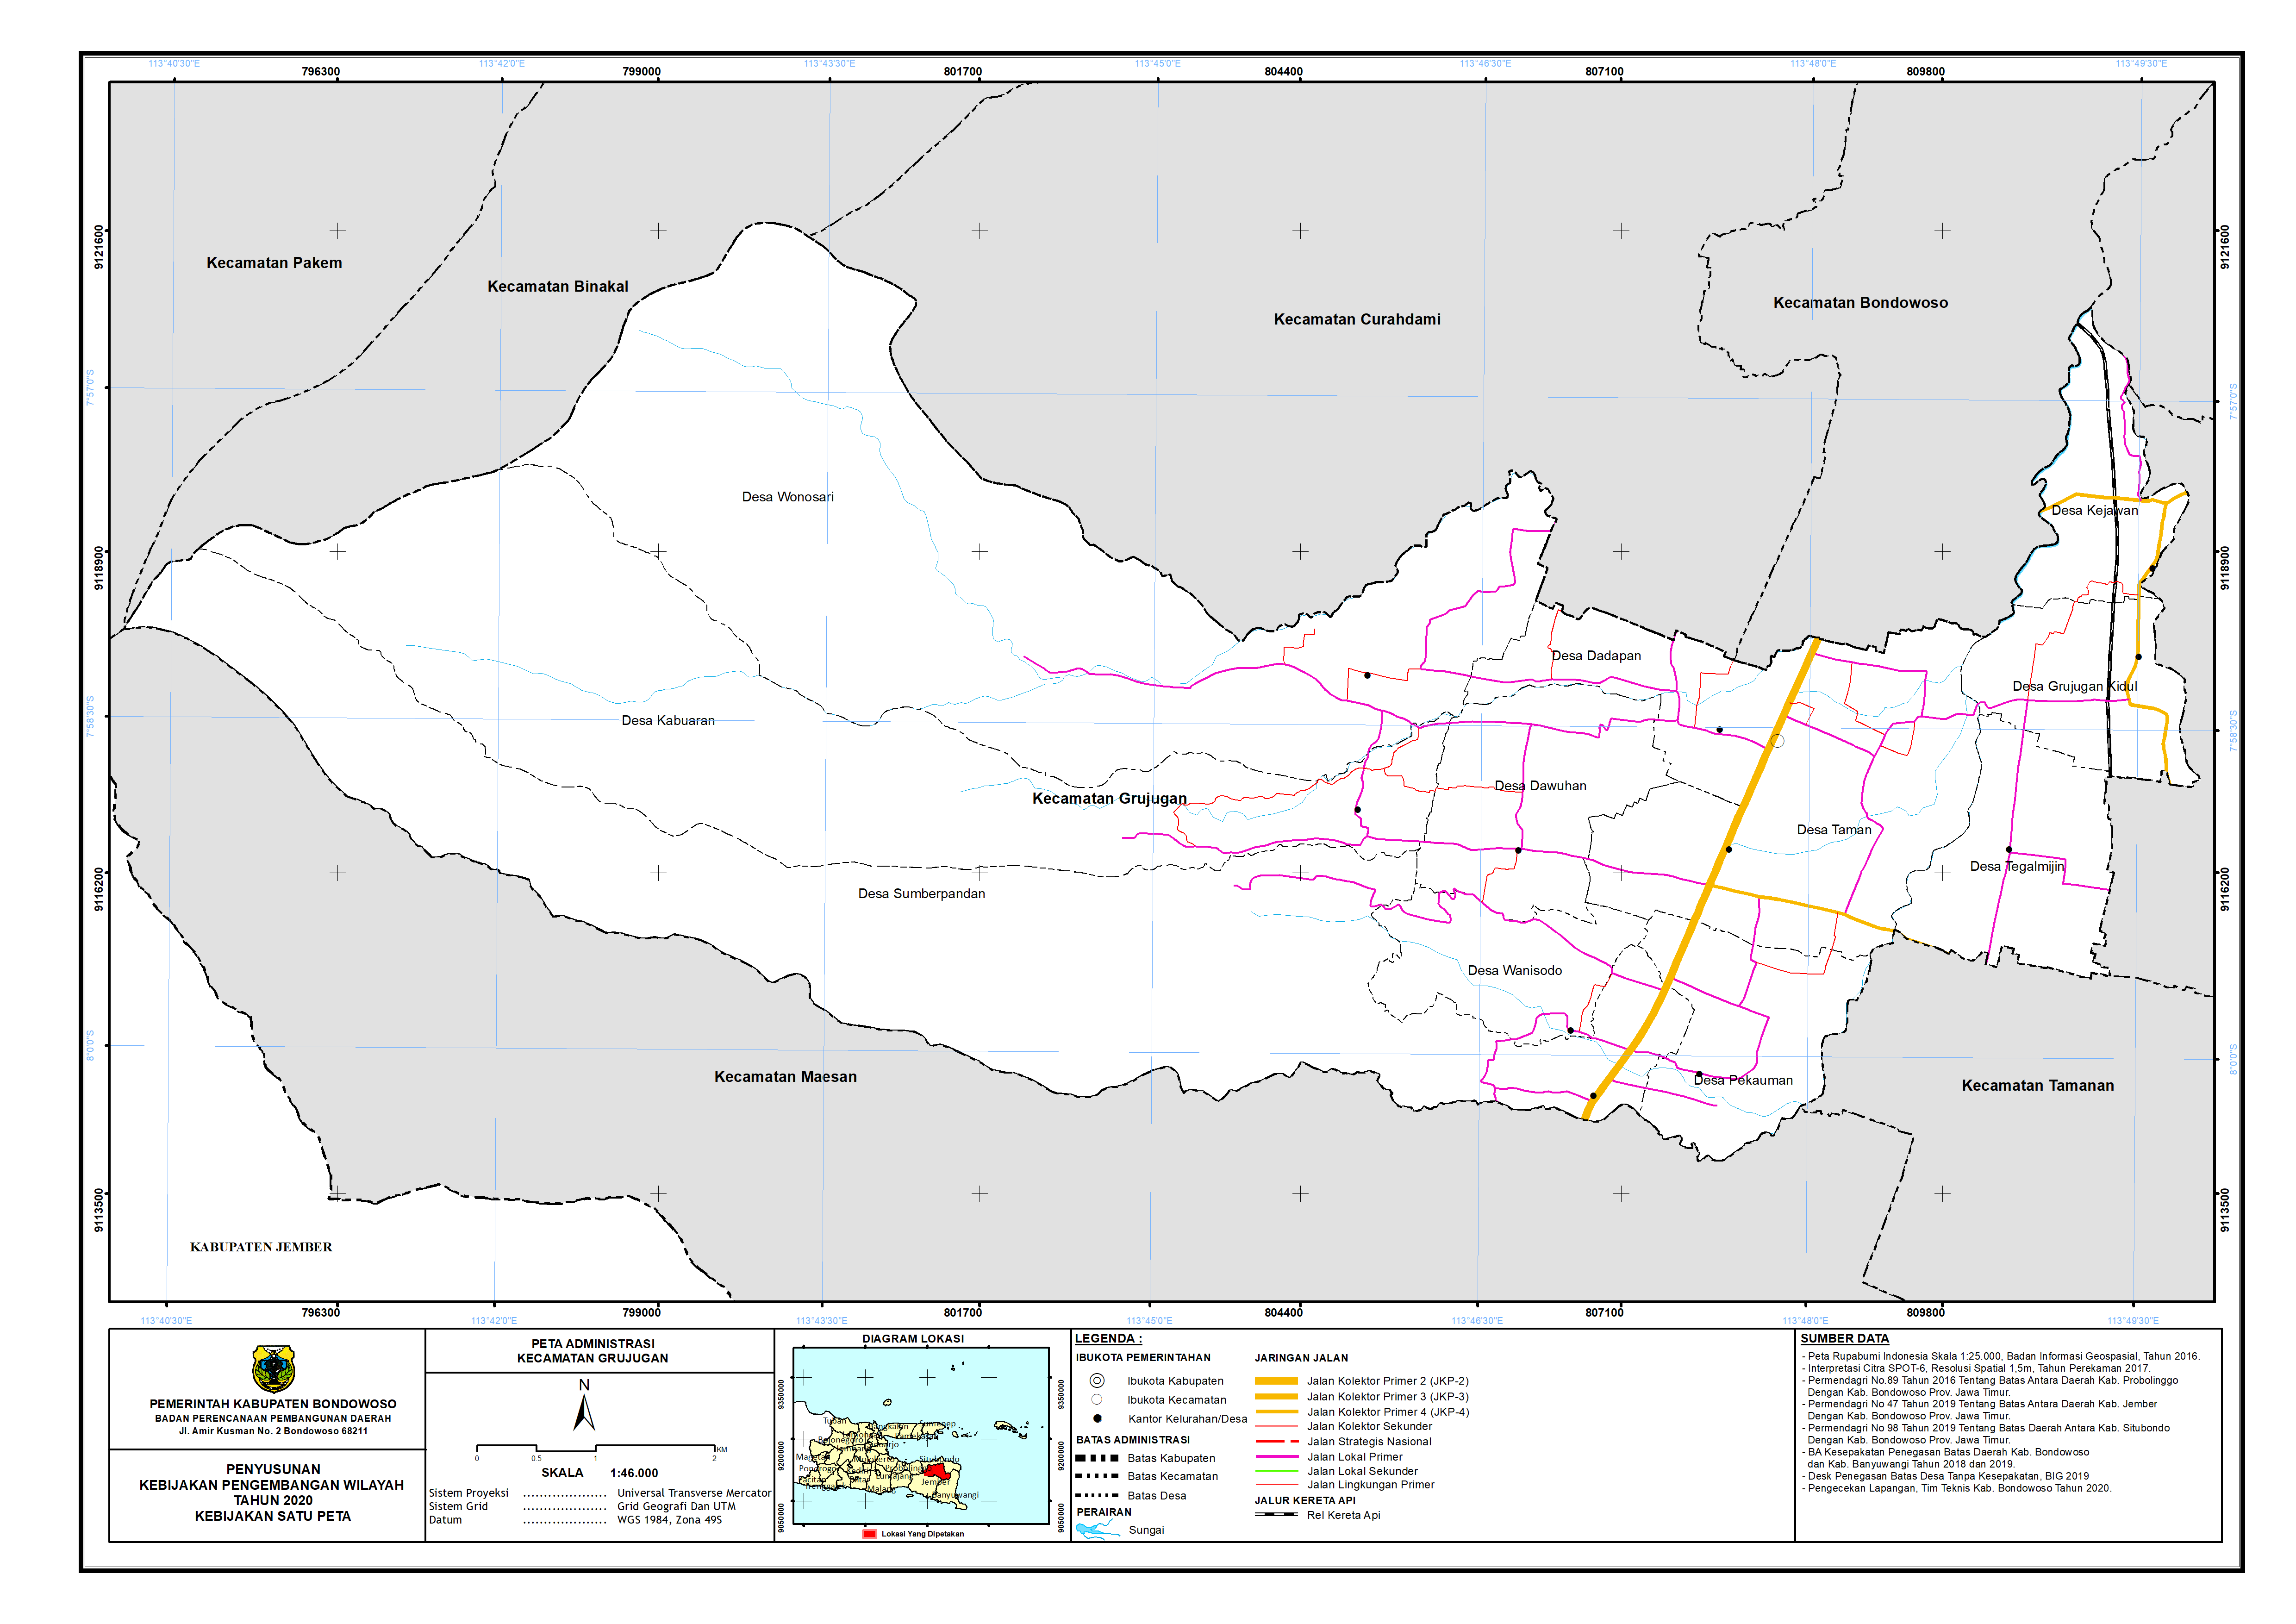 Peta Administrasi Kecamatan Grujugan.png